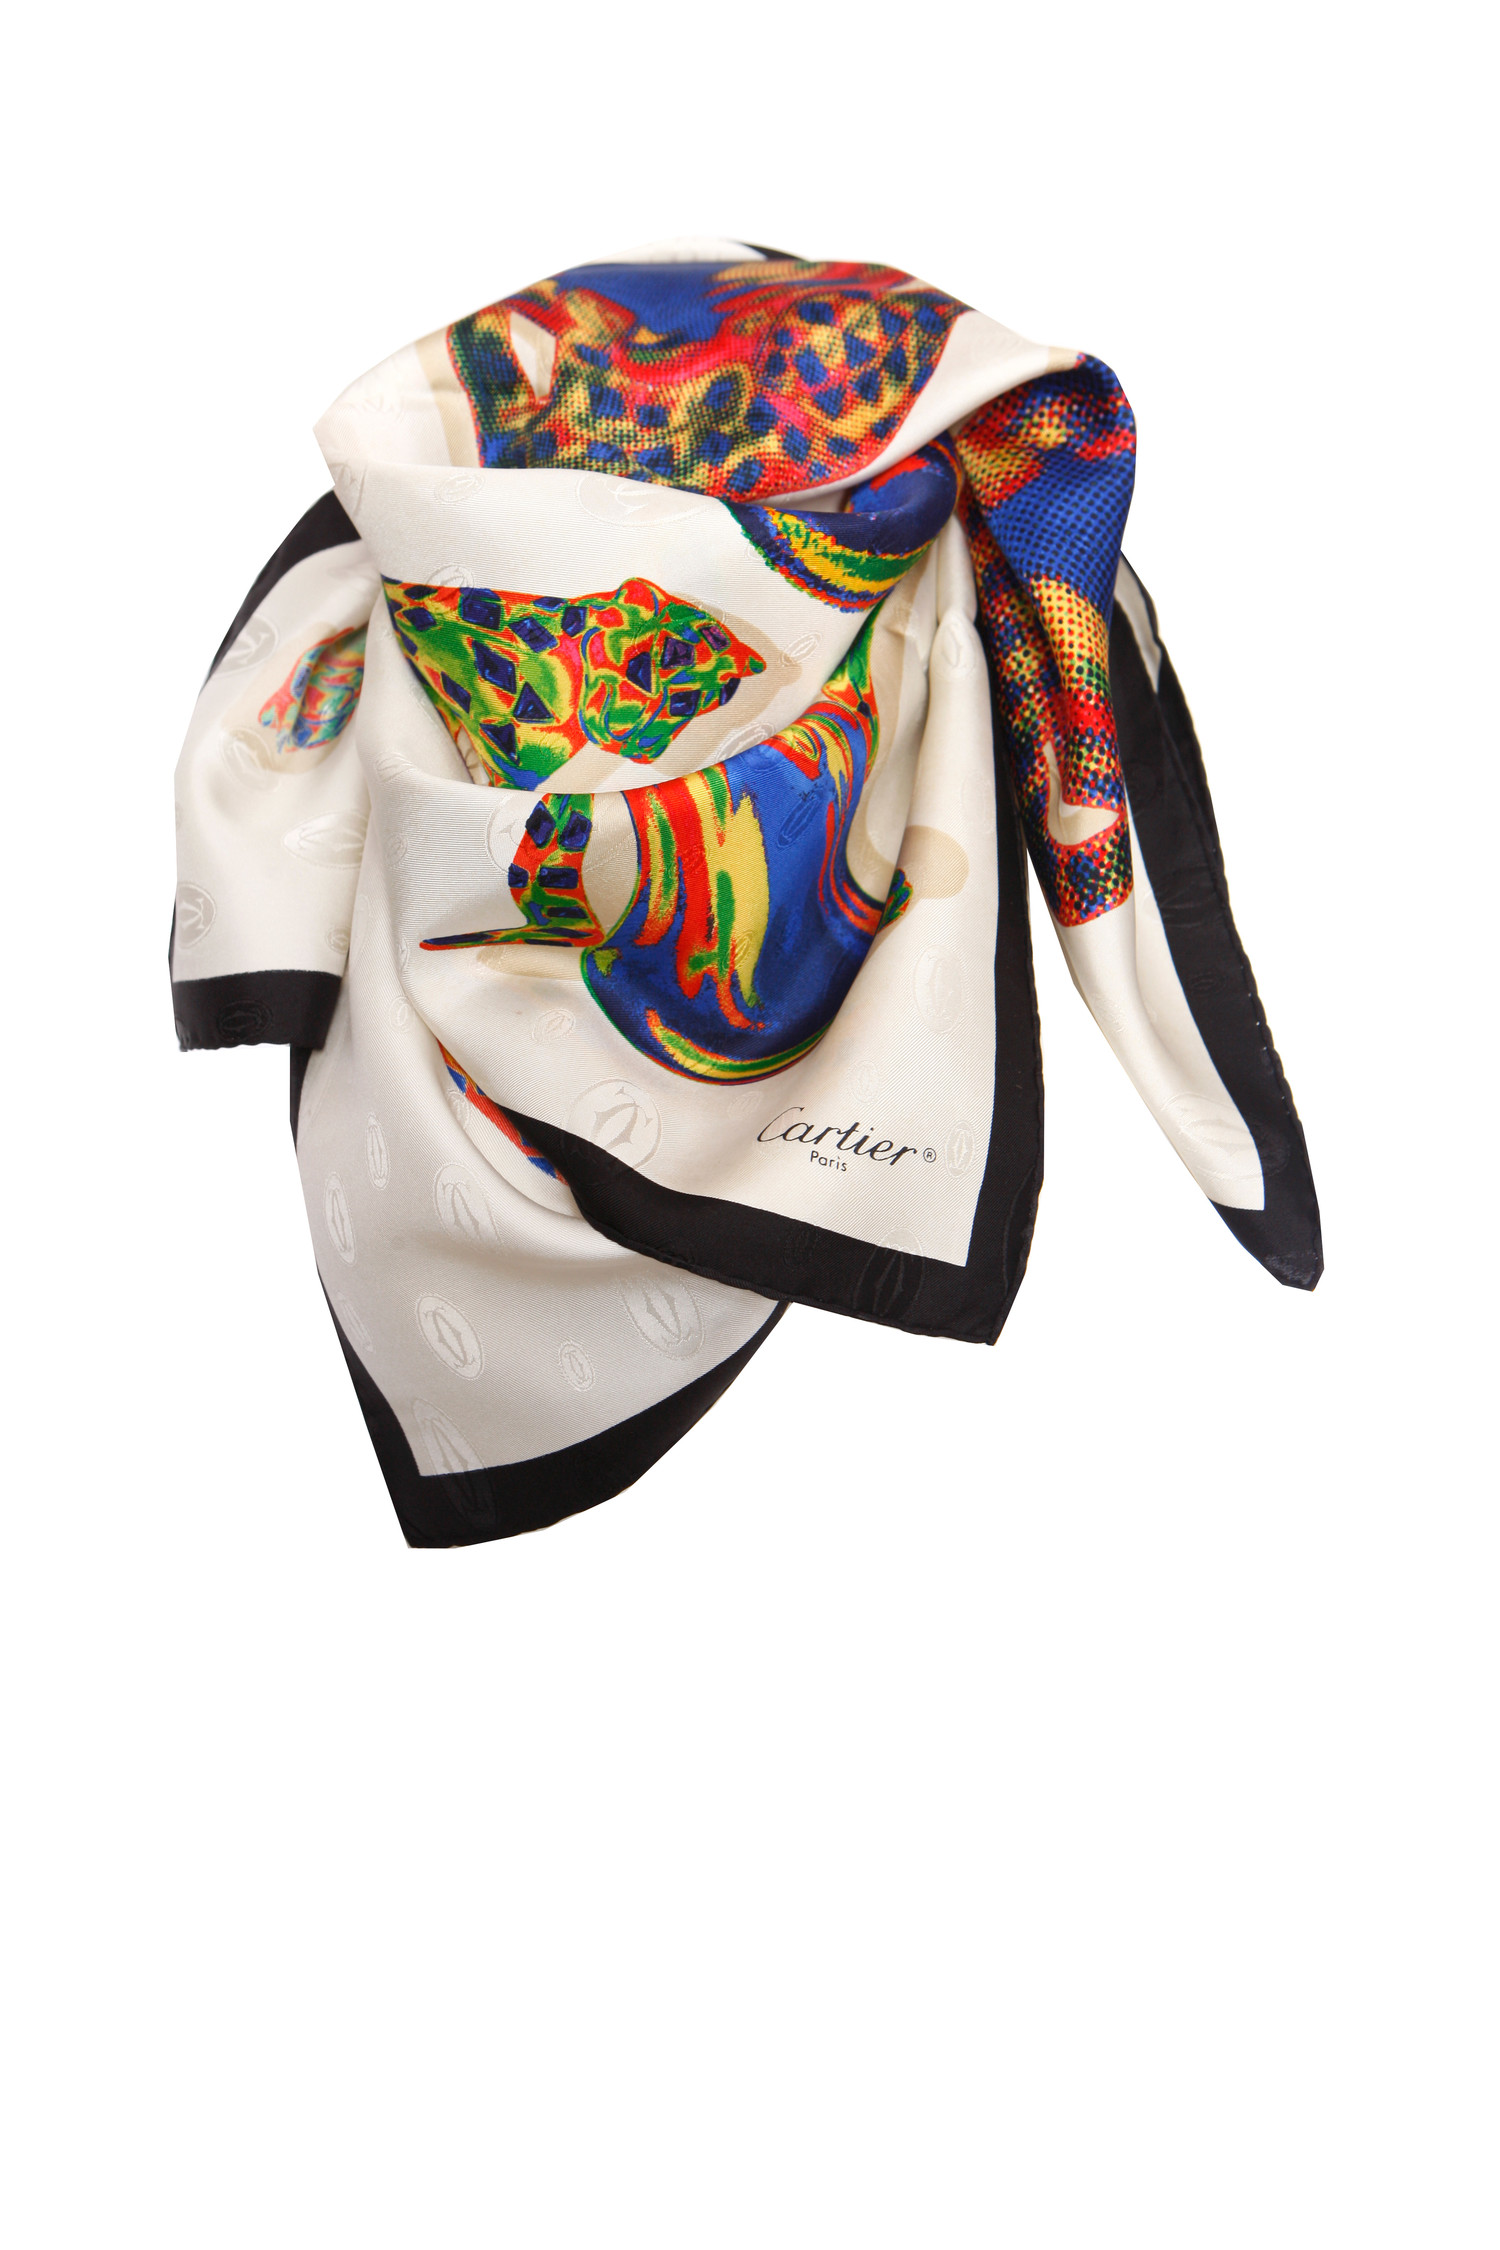 hop Wonder Picknicken Cartier, Must de cartier multikleur zijden sjaal met panter patroon print.  - Unique Designer Pieces